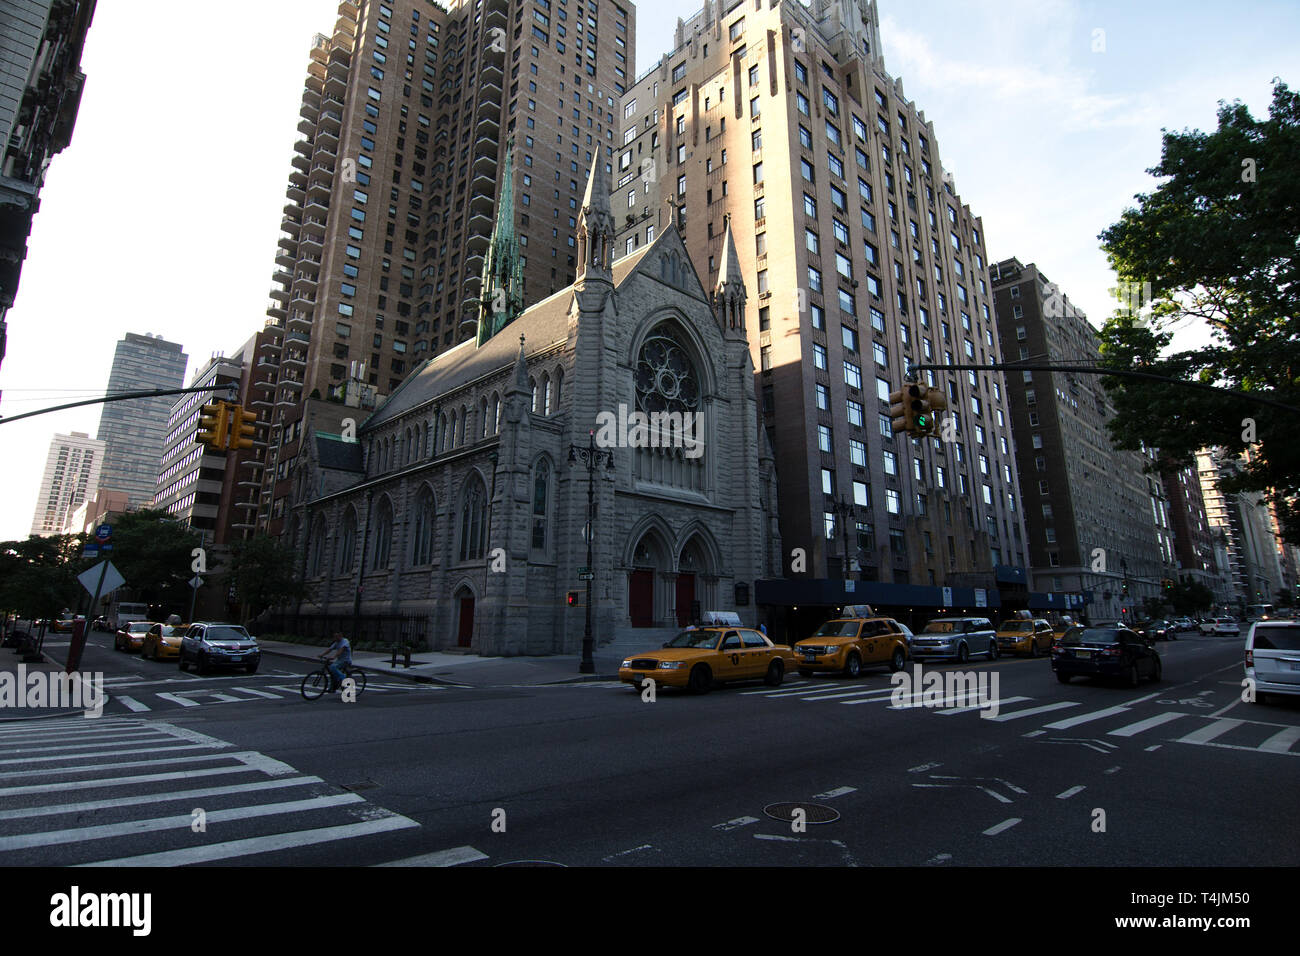 La città di New York, New York, Stati Uniti d'America - 2018: Santa Trinità Chiesa luterana (1920), che si trova a 51 Central Park West. Foto Stock